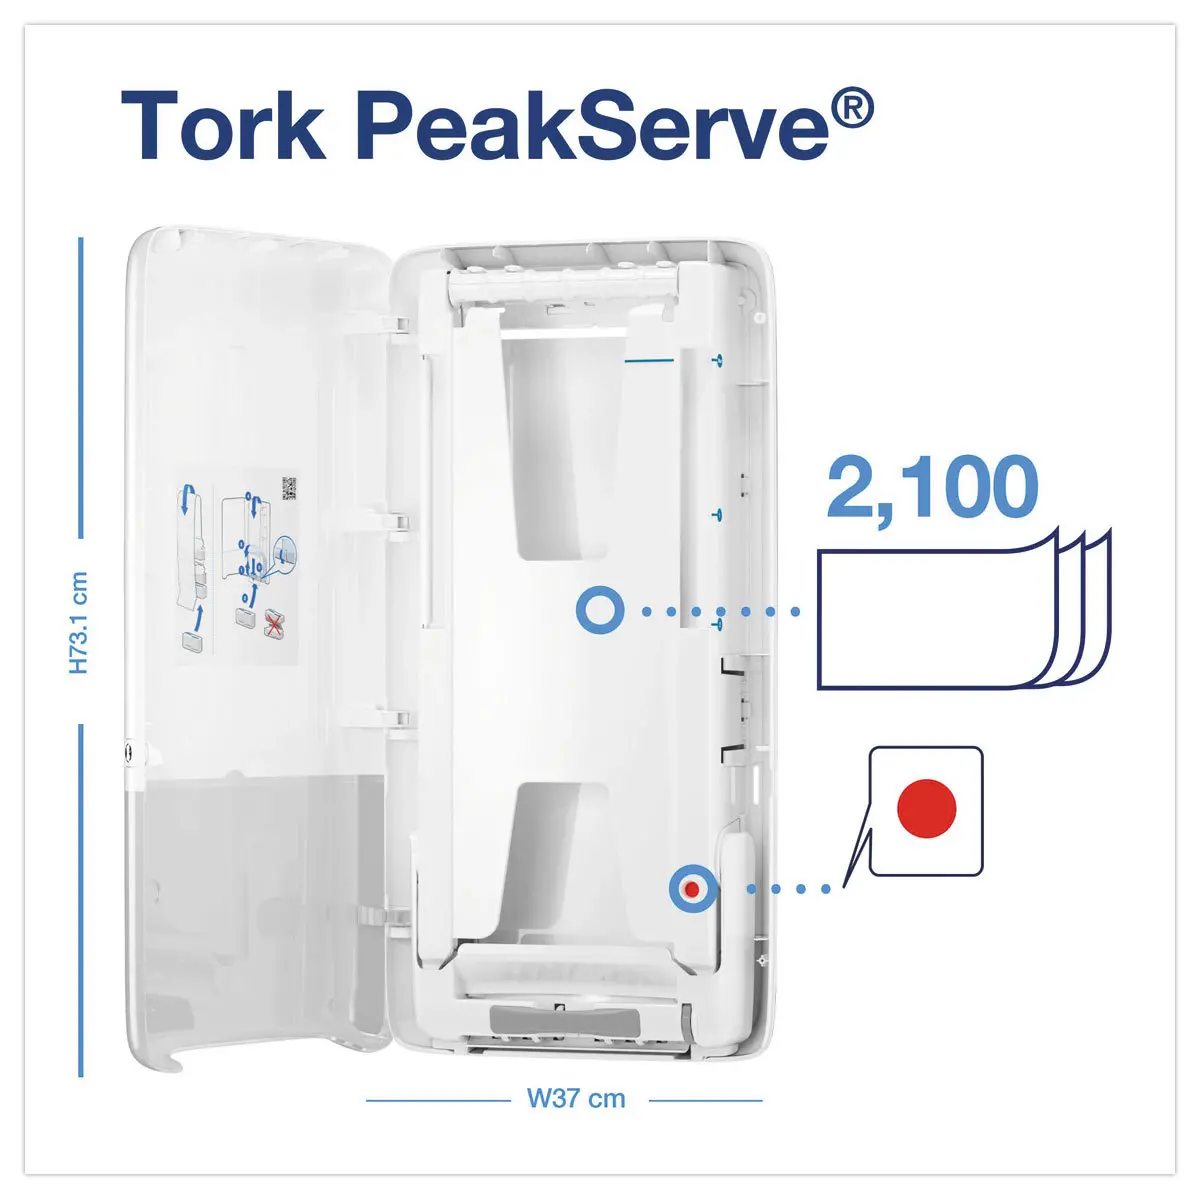 Distributeur pour essuie-mains Tork PeakServe - TORK photo du produit